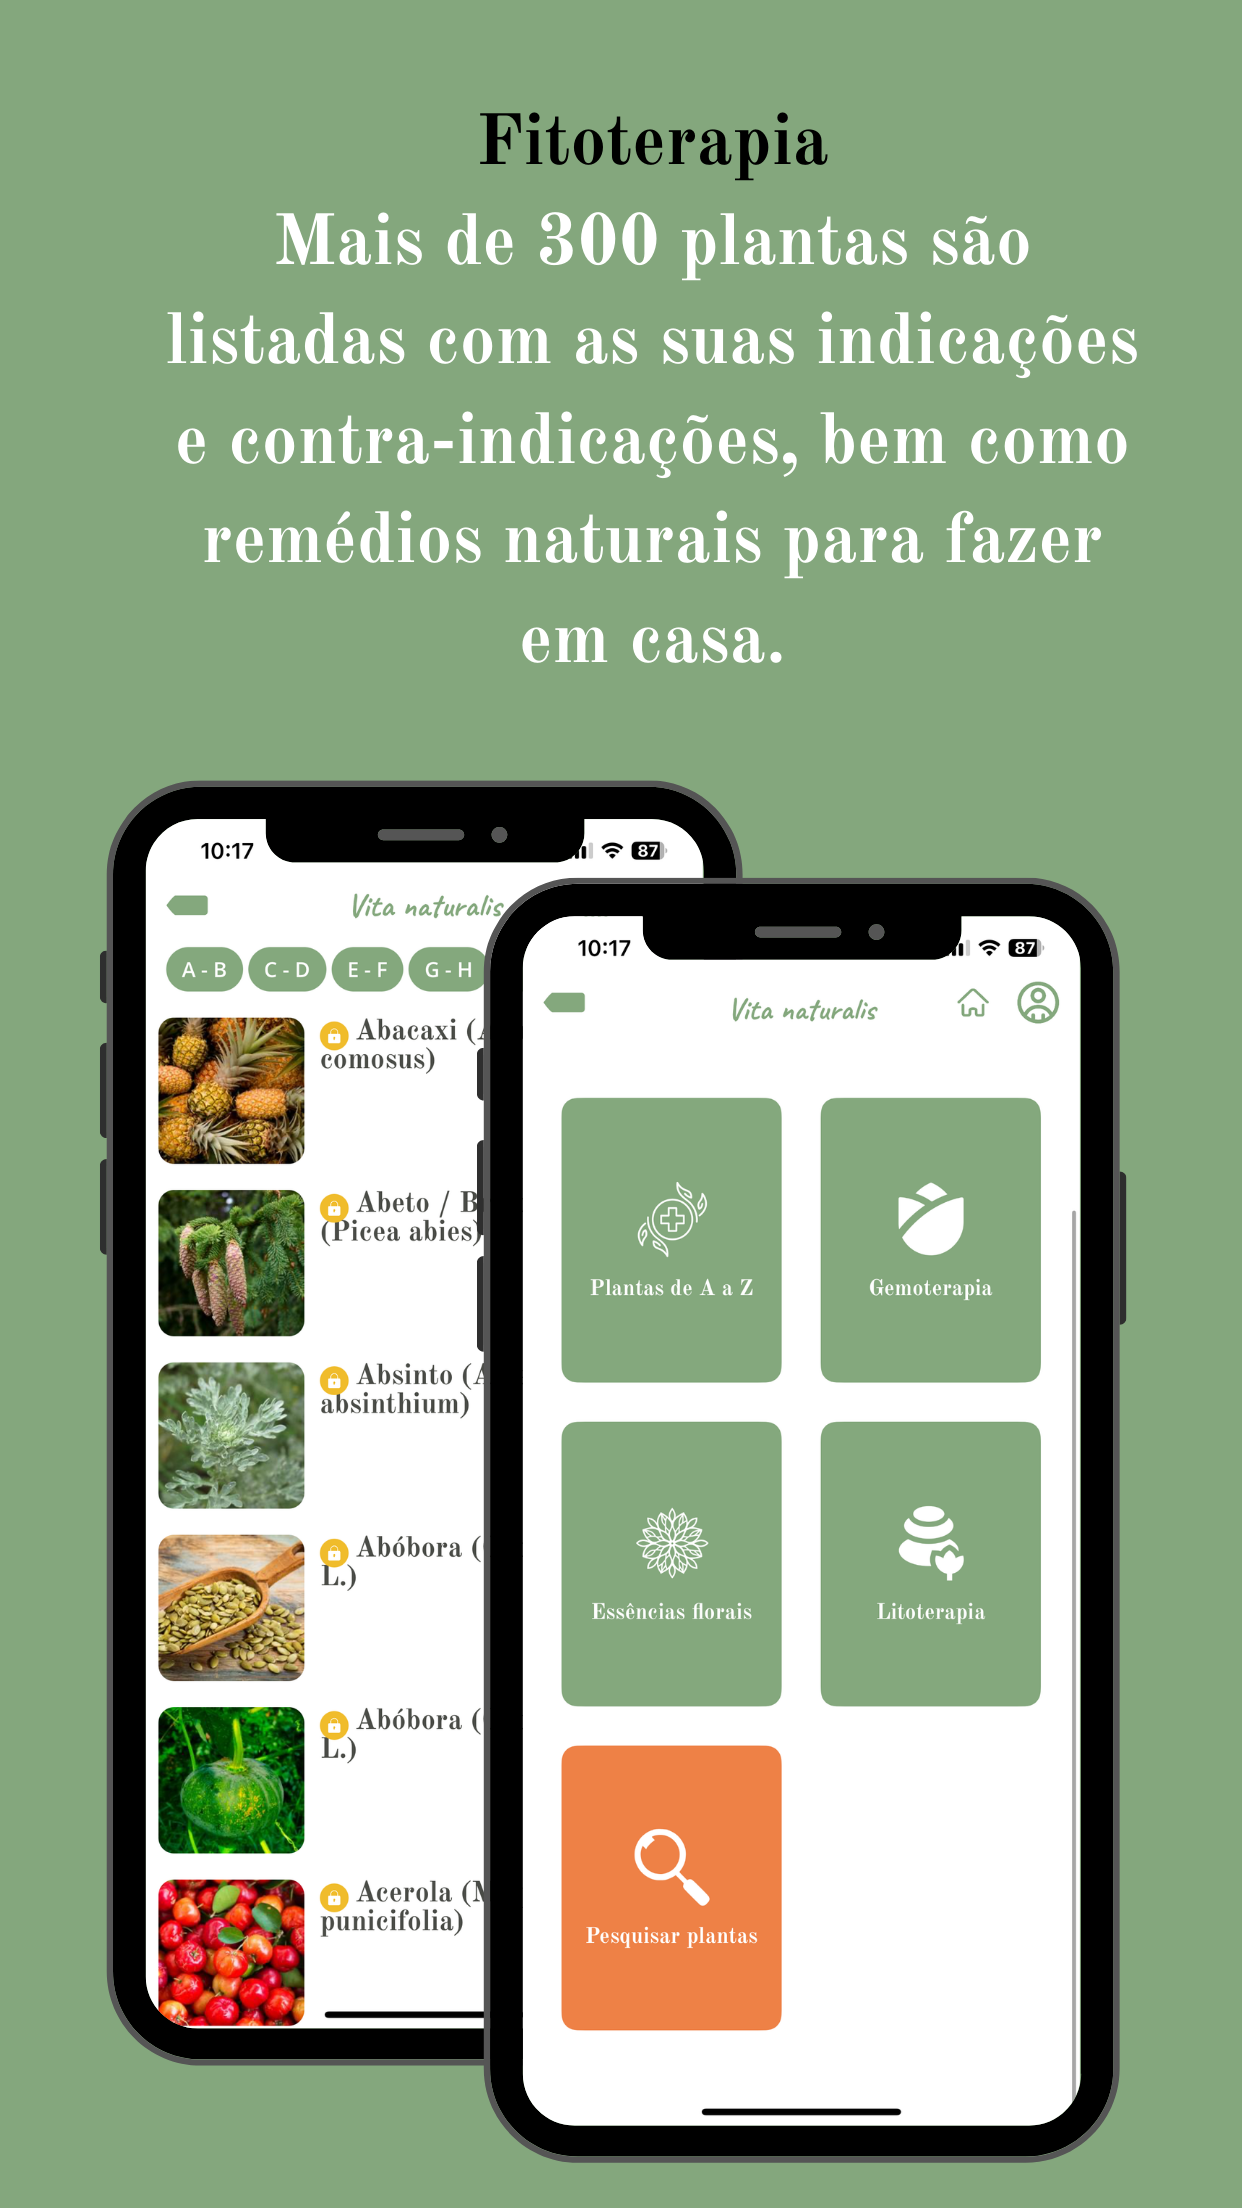 VITA NATURALIS - The 100% Natural Health app